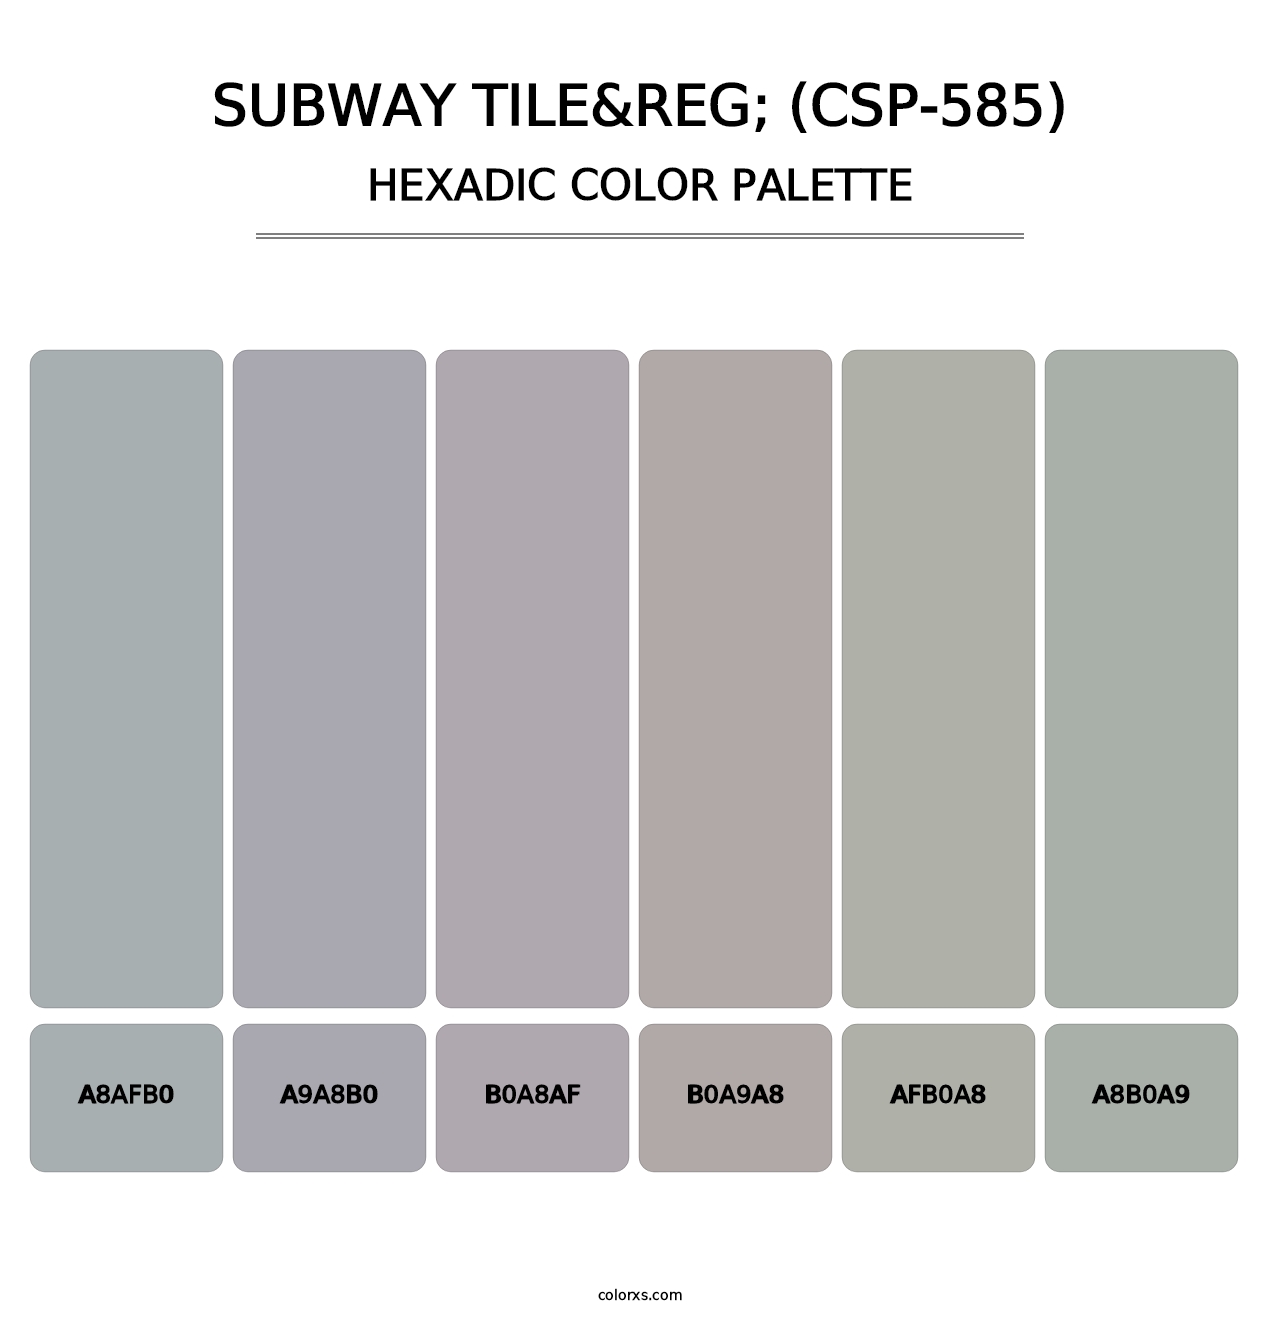 Subway Tile&reg; (CSP-585) - Hexadic Color Palette